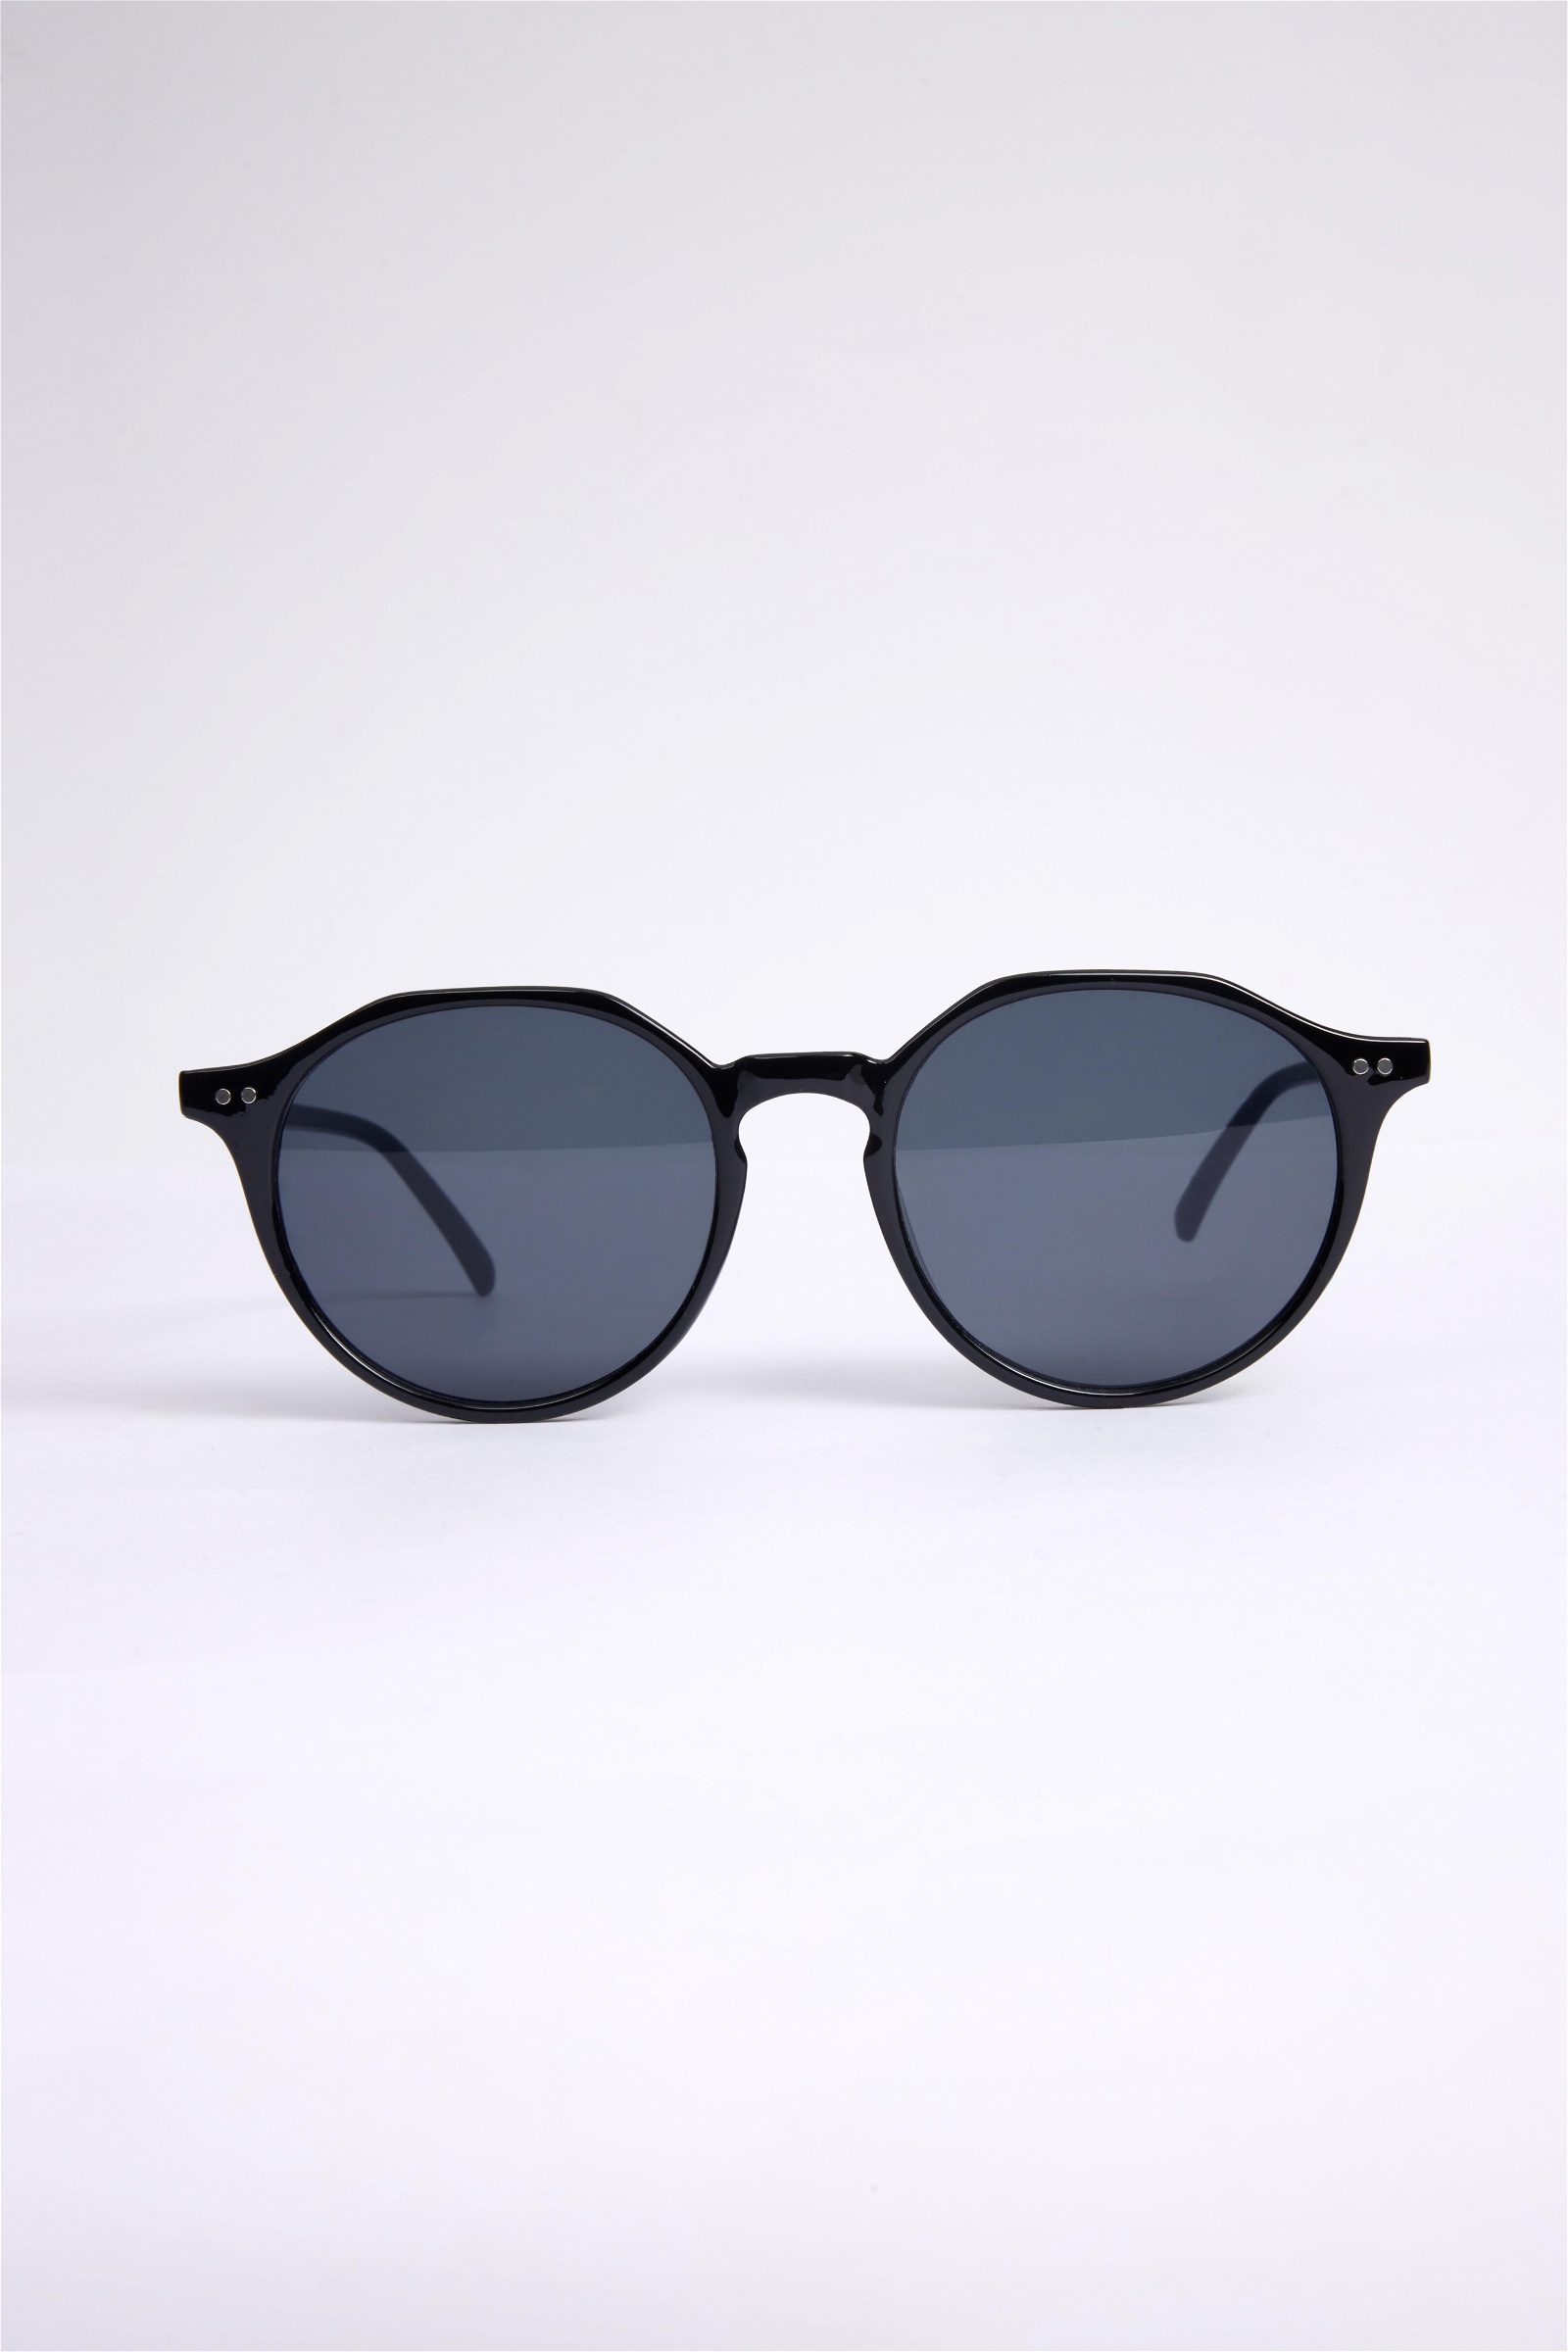 Plain Black Sunglasses